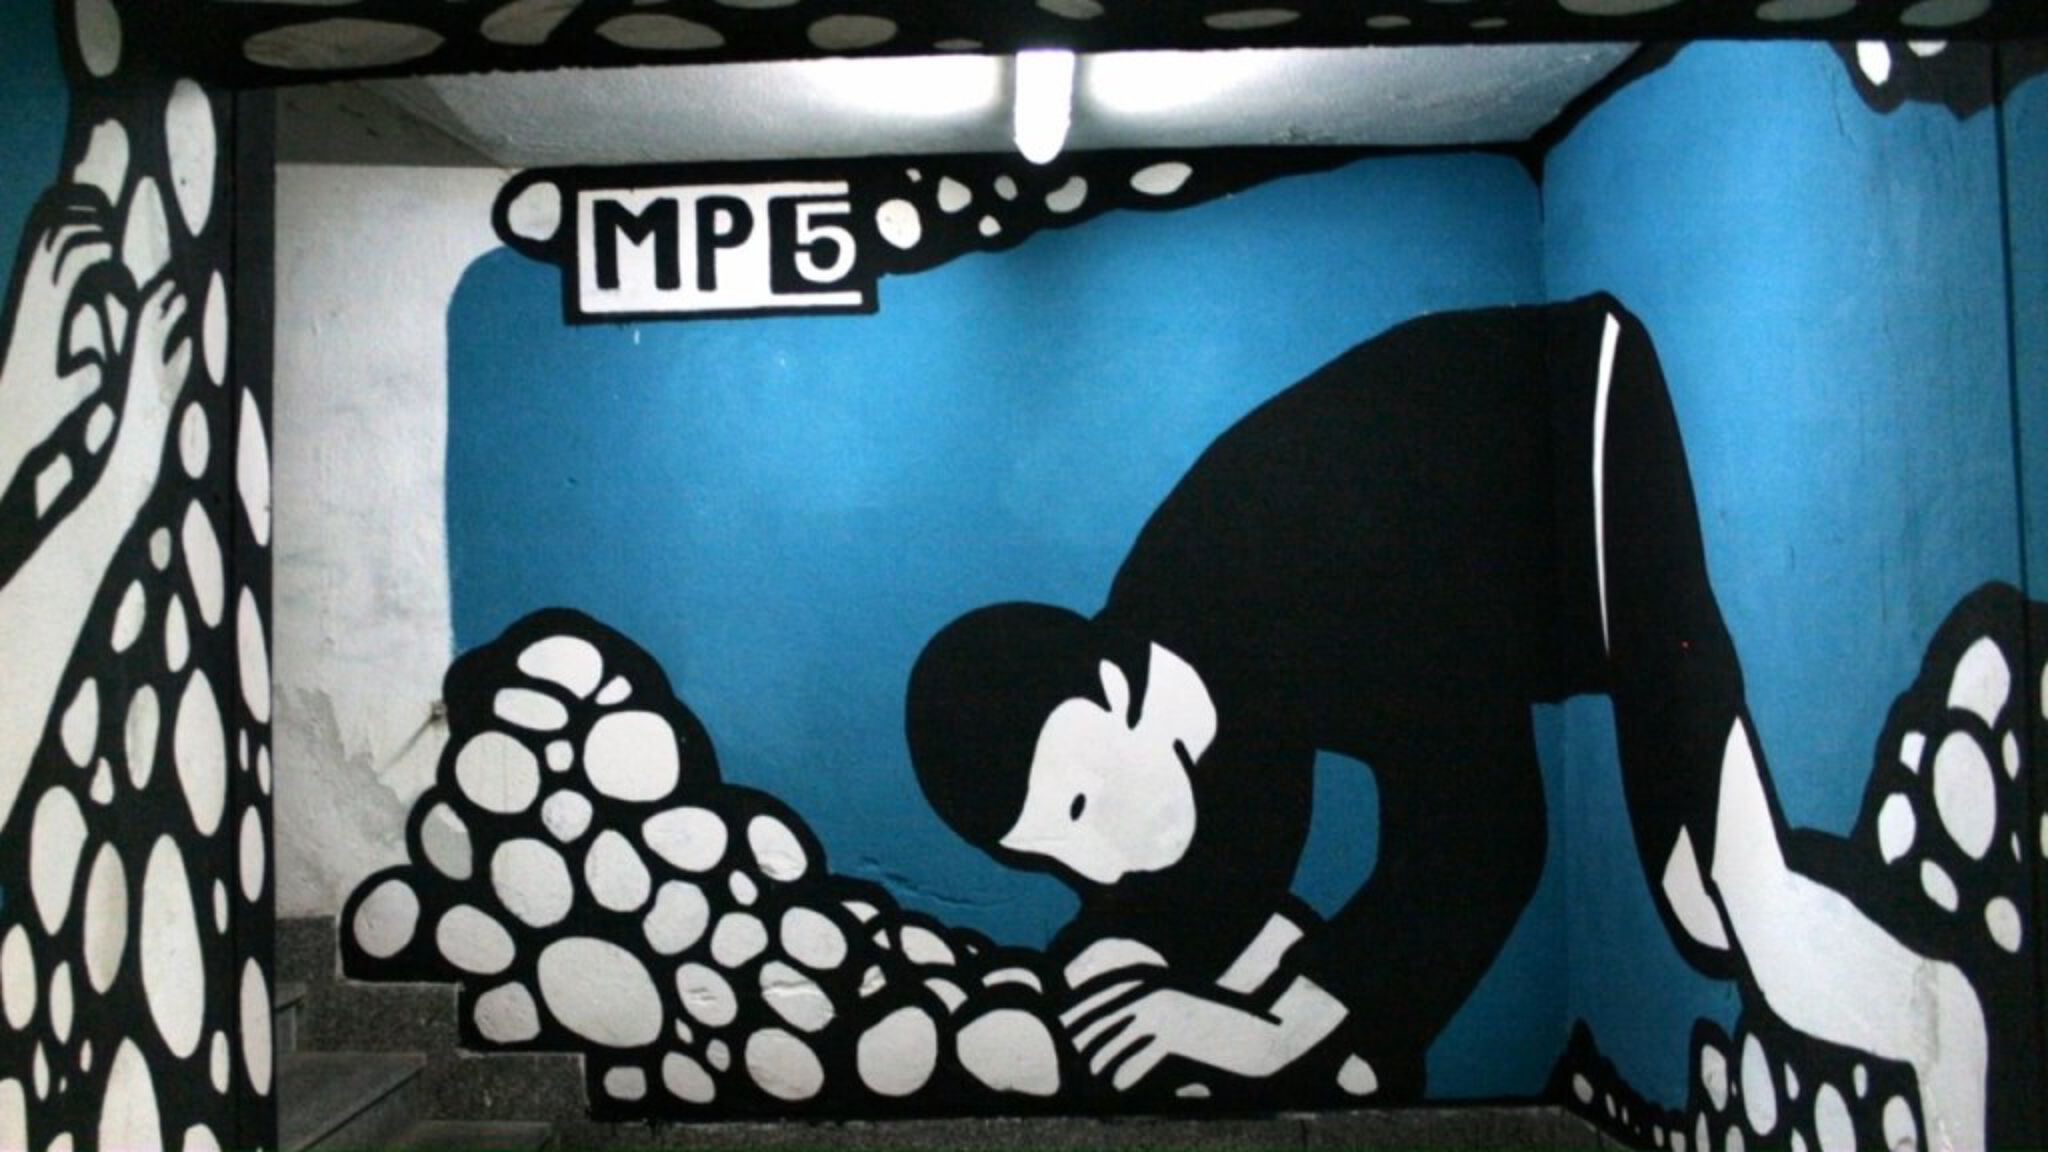 MP5&mdash;Untitled